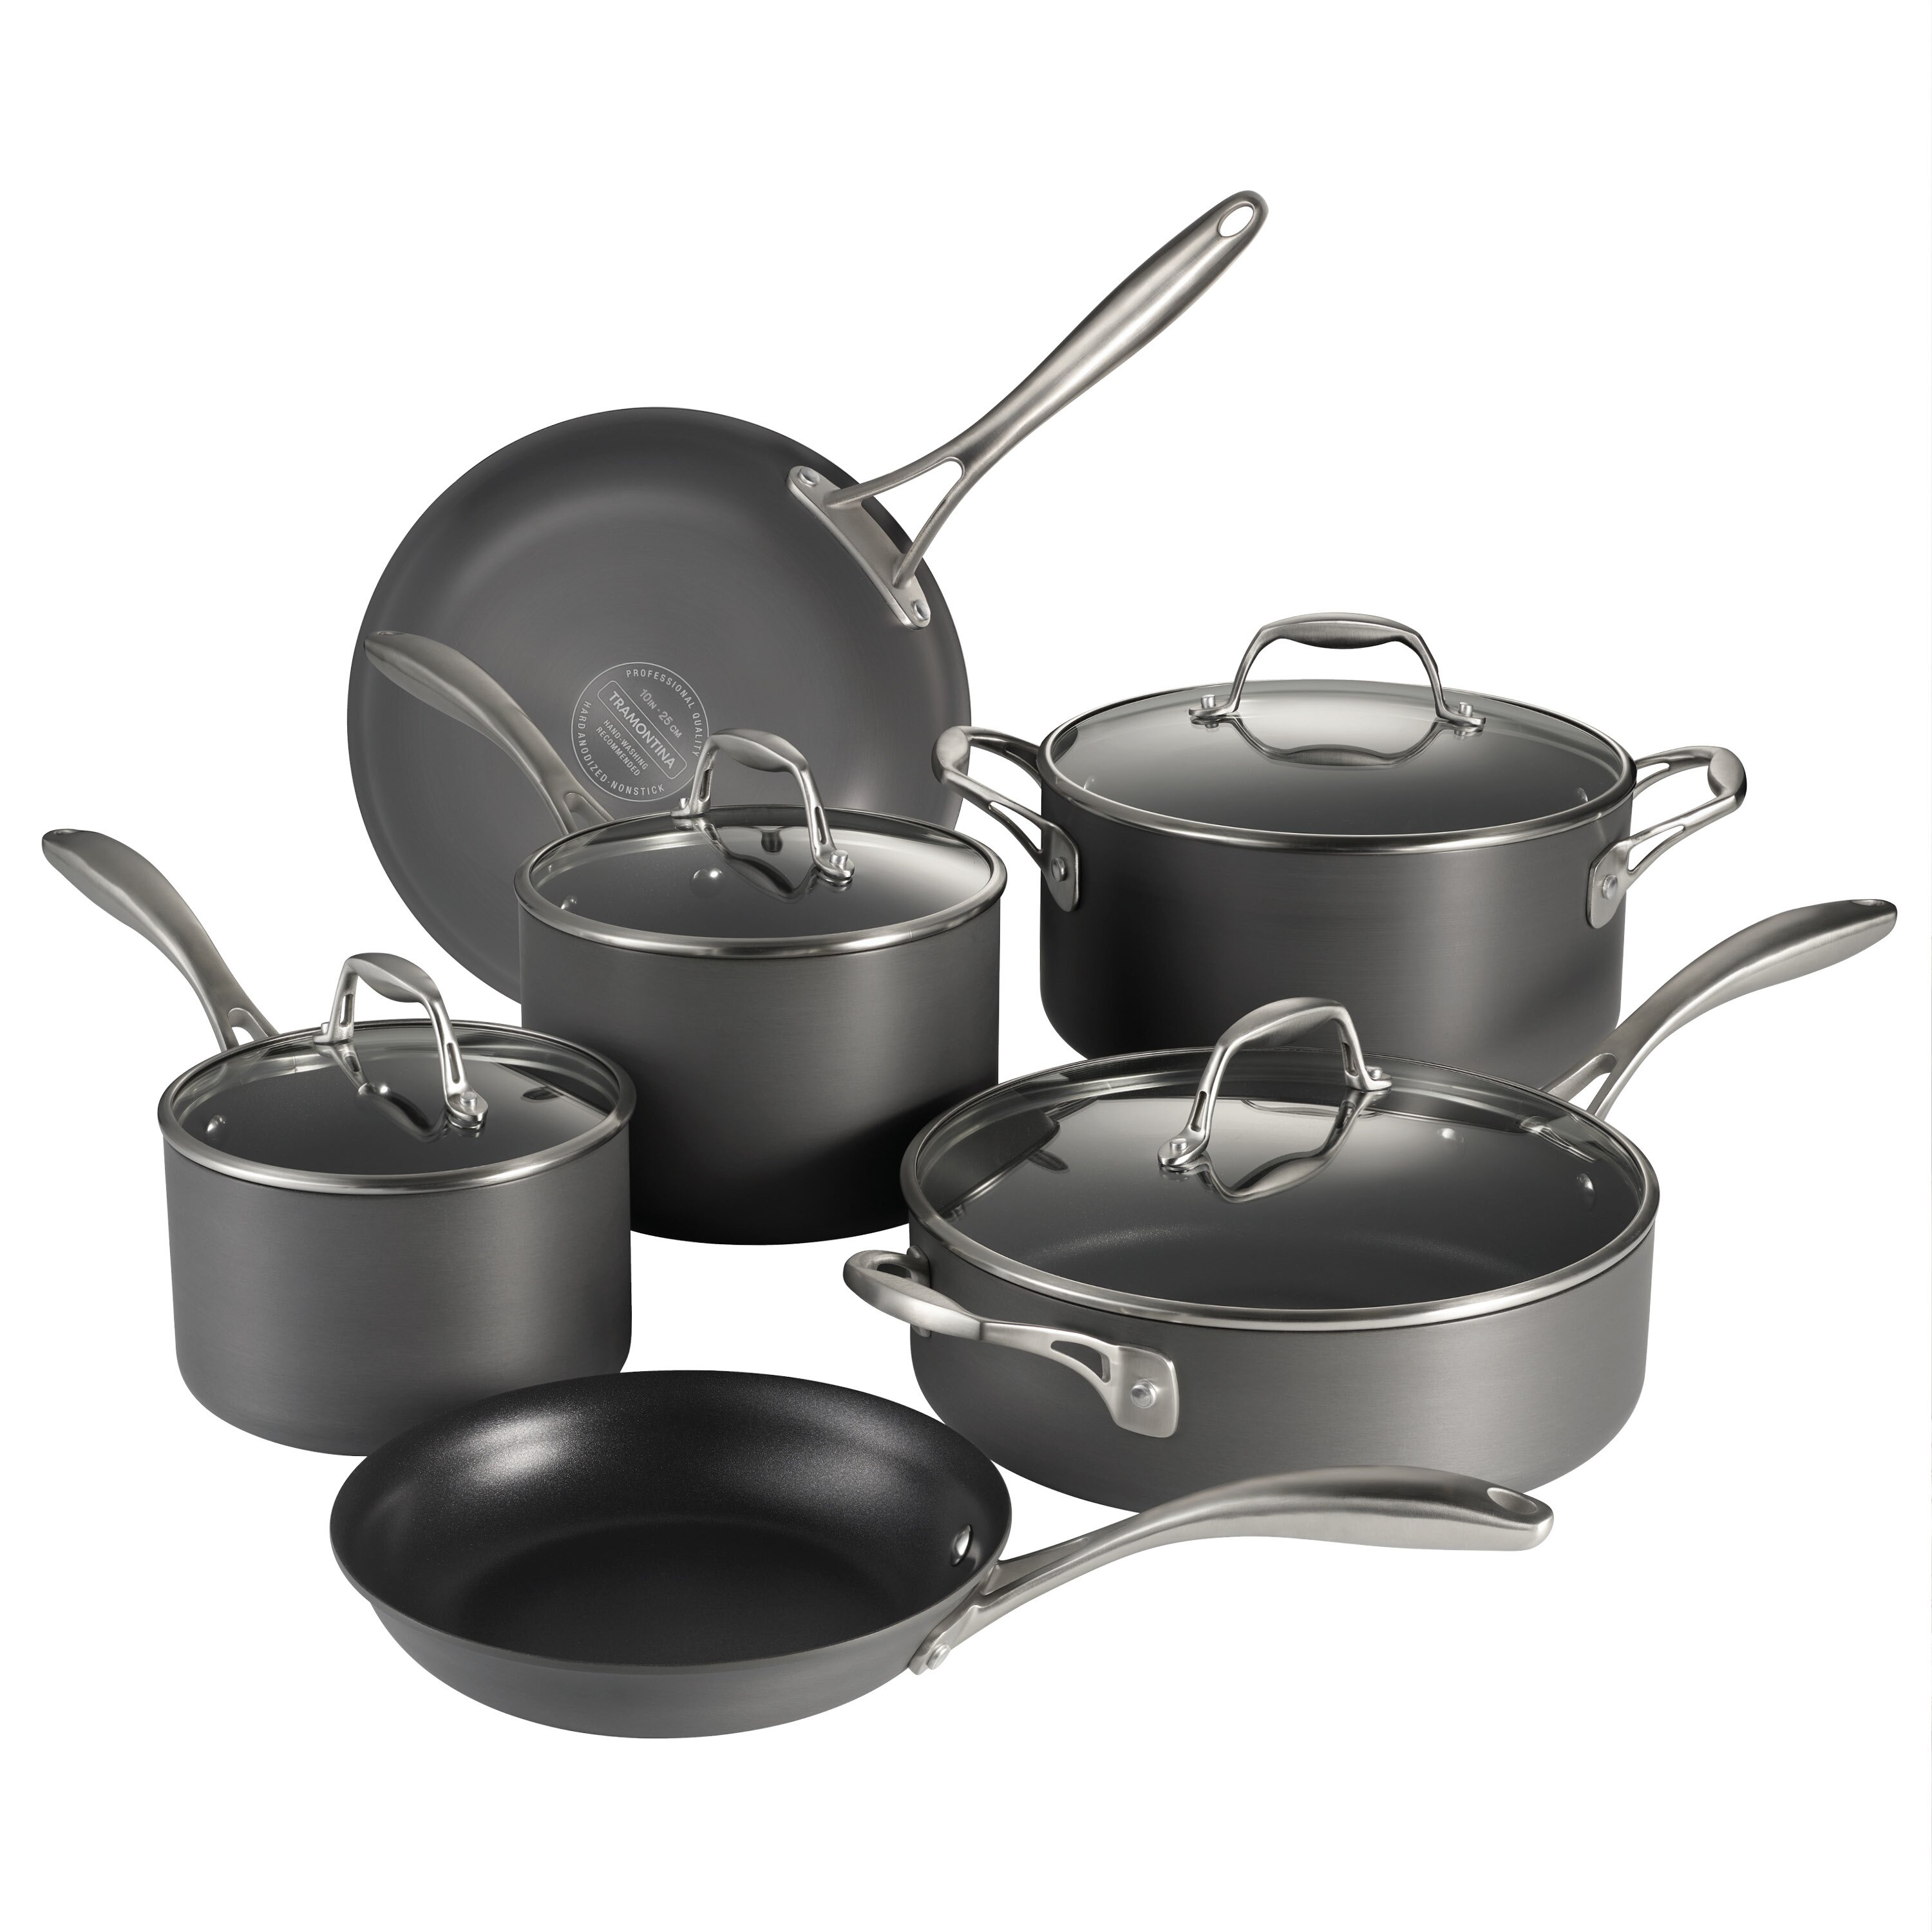 https://assets.wfcdn.com/im/66888436/compr-r85/1544/154469245/tramontina-gourmet-10-piece-hard-anodized-aluminum-cookware-set.jpg